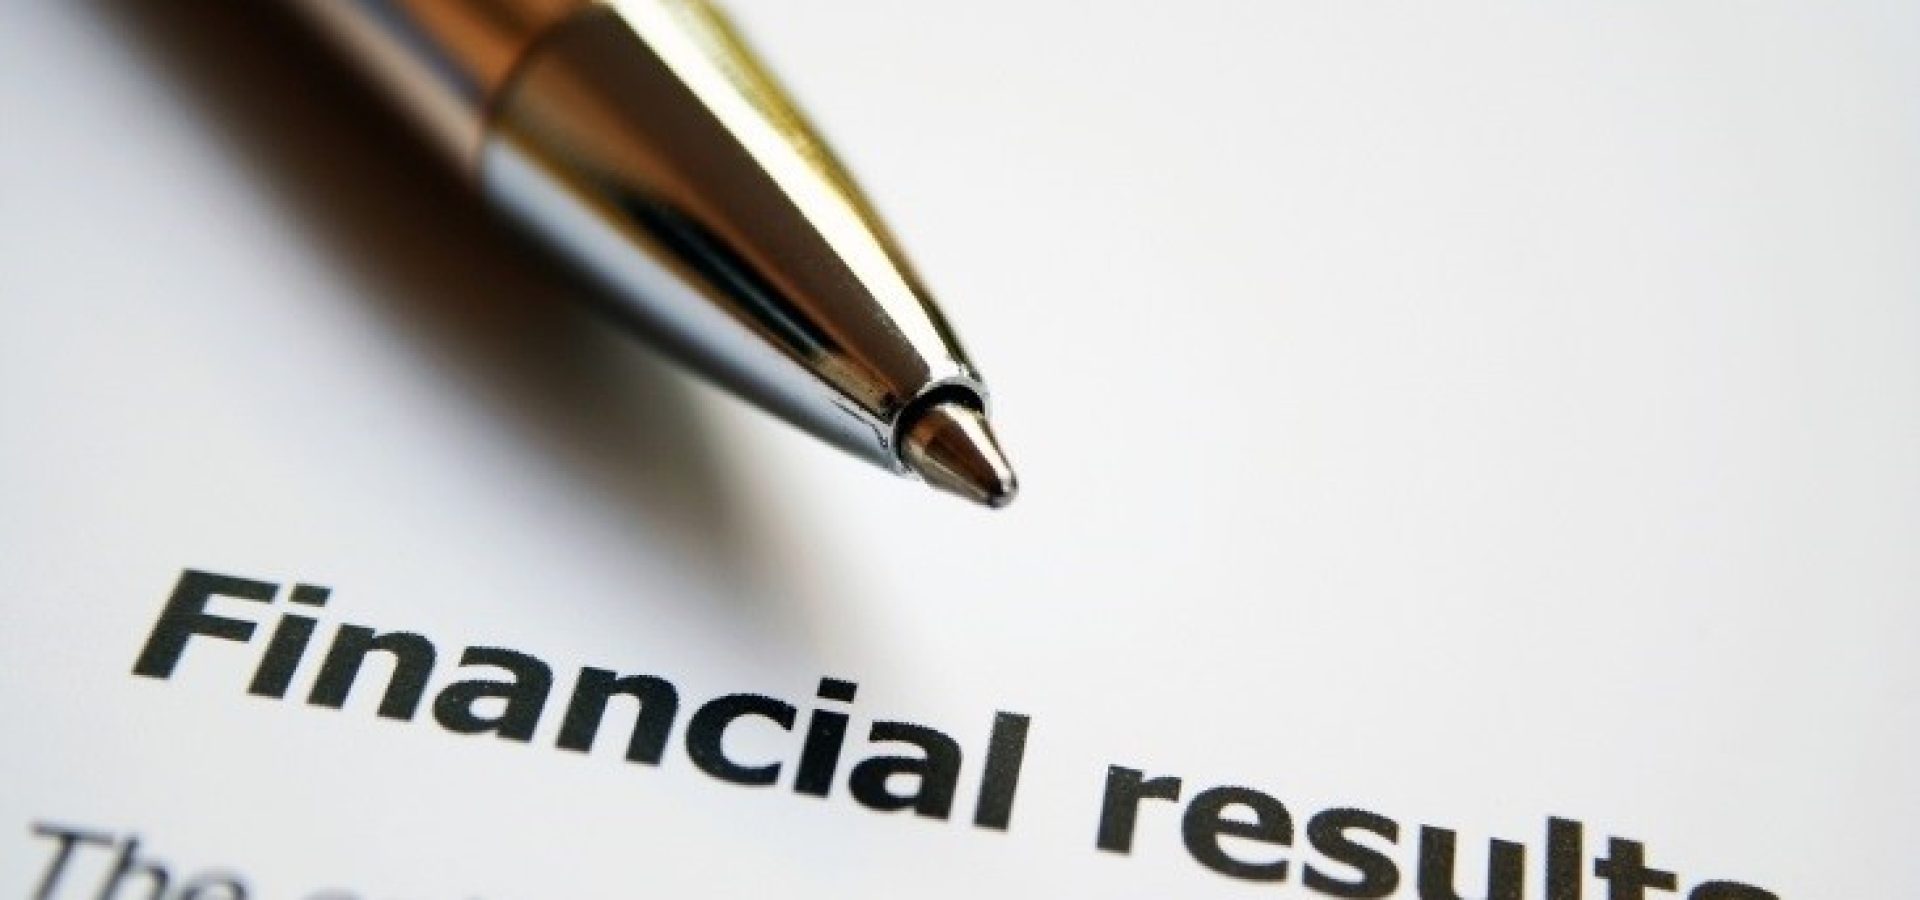 finance; financial results written on paper - wibestbroker